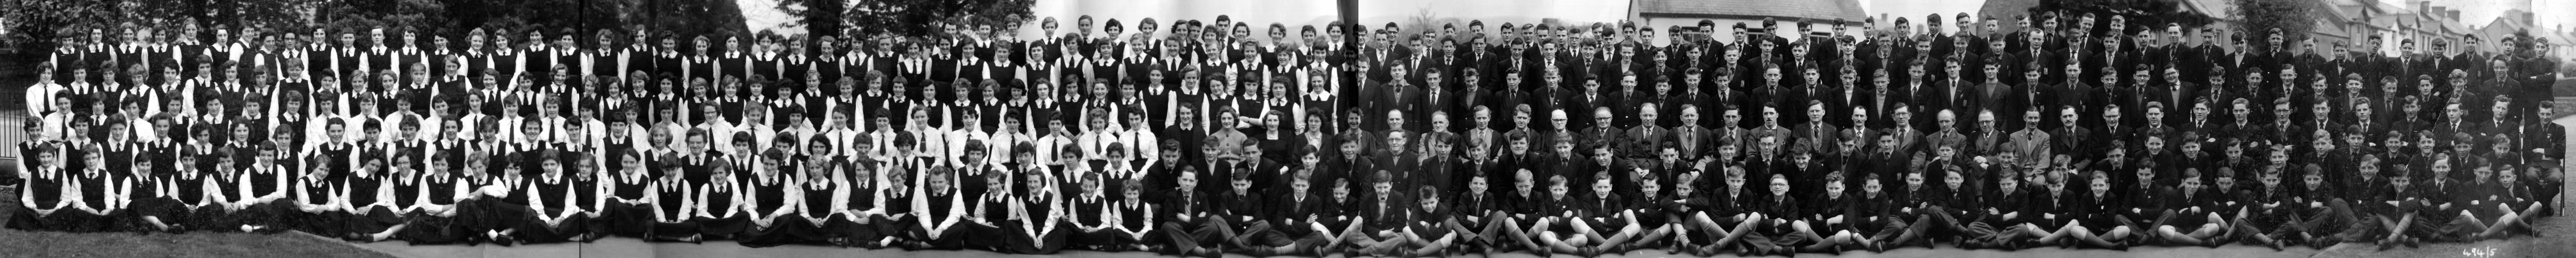 Llandeilo Grammar School - 1959